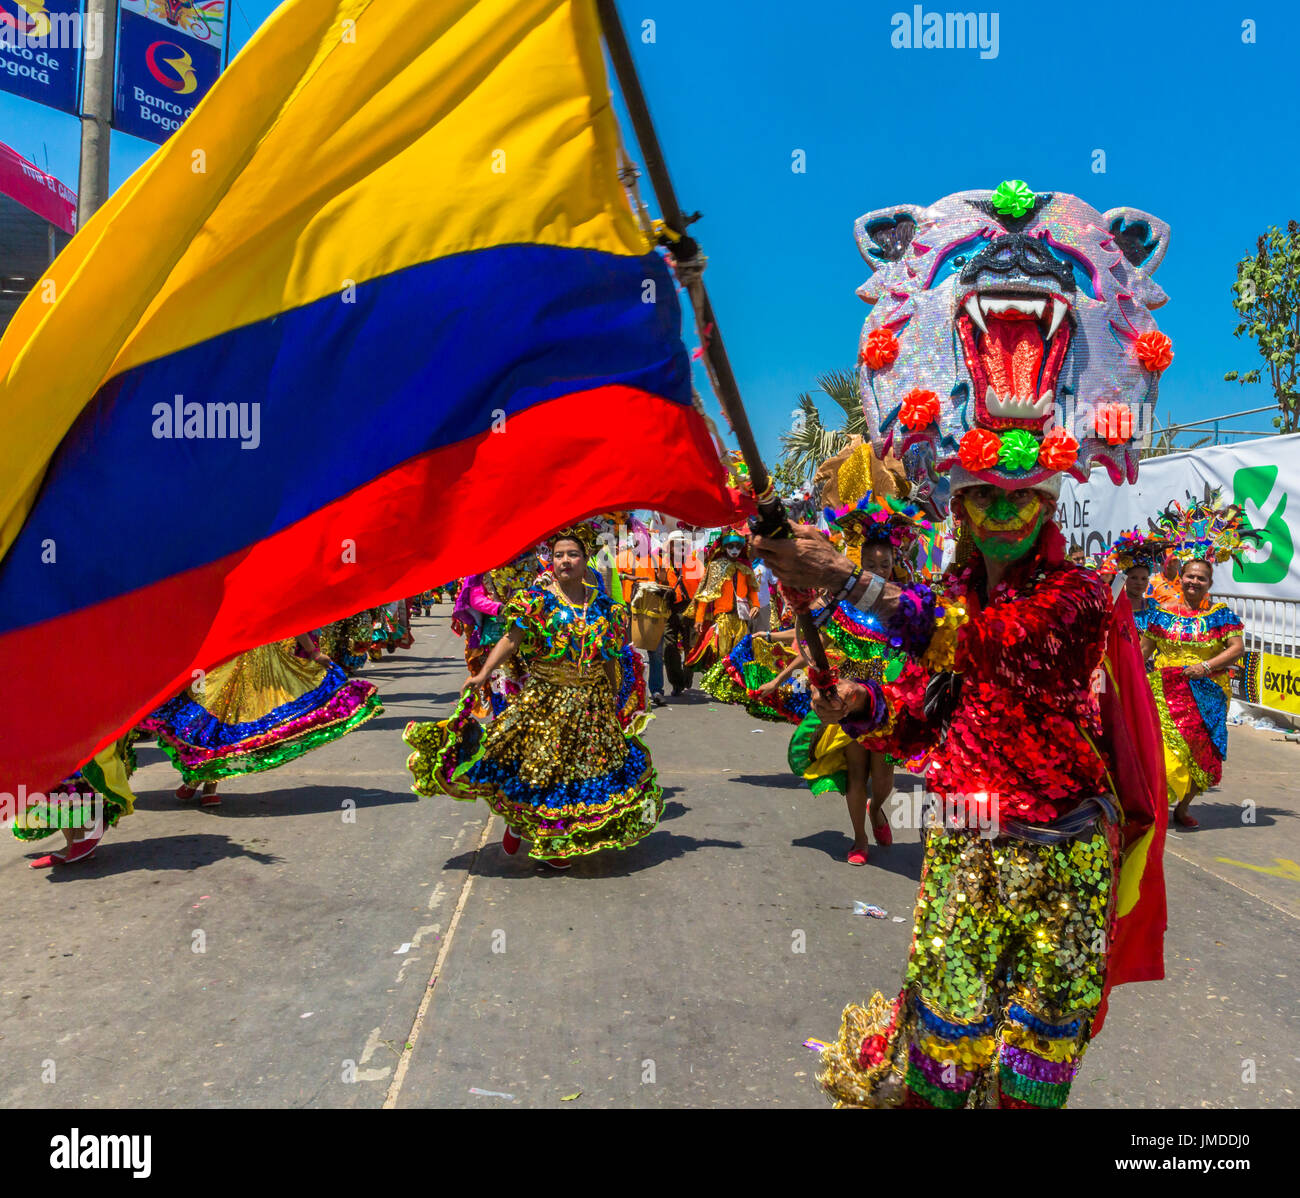 Bogota , Colombie - Février 26, 2017 : les personnes qui participent au défilé de la fête du Carnaval de Barranquilla Colombie Atlantico Banque D'Images